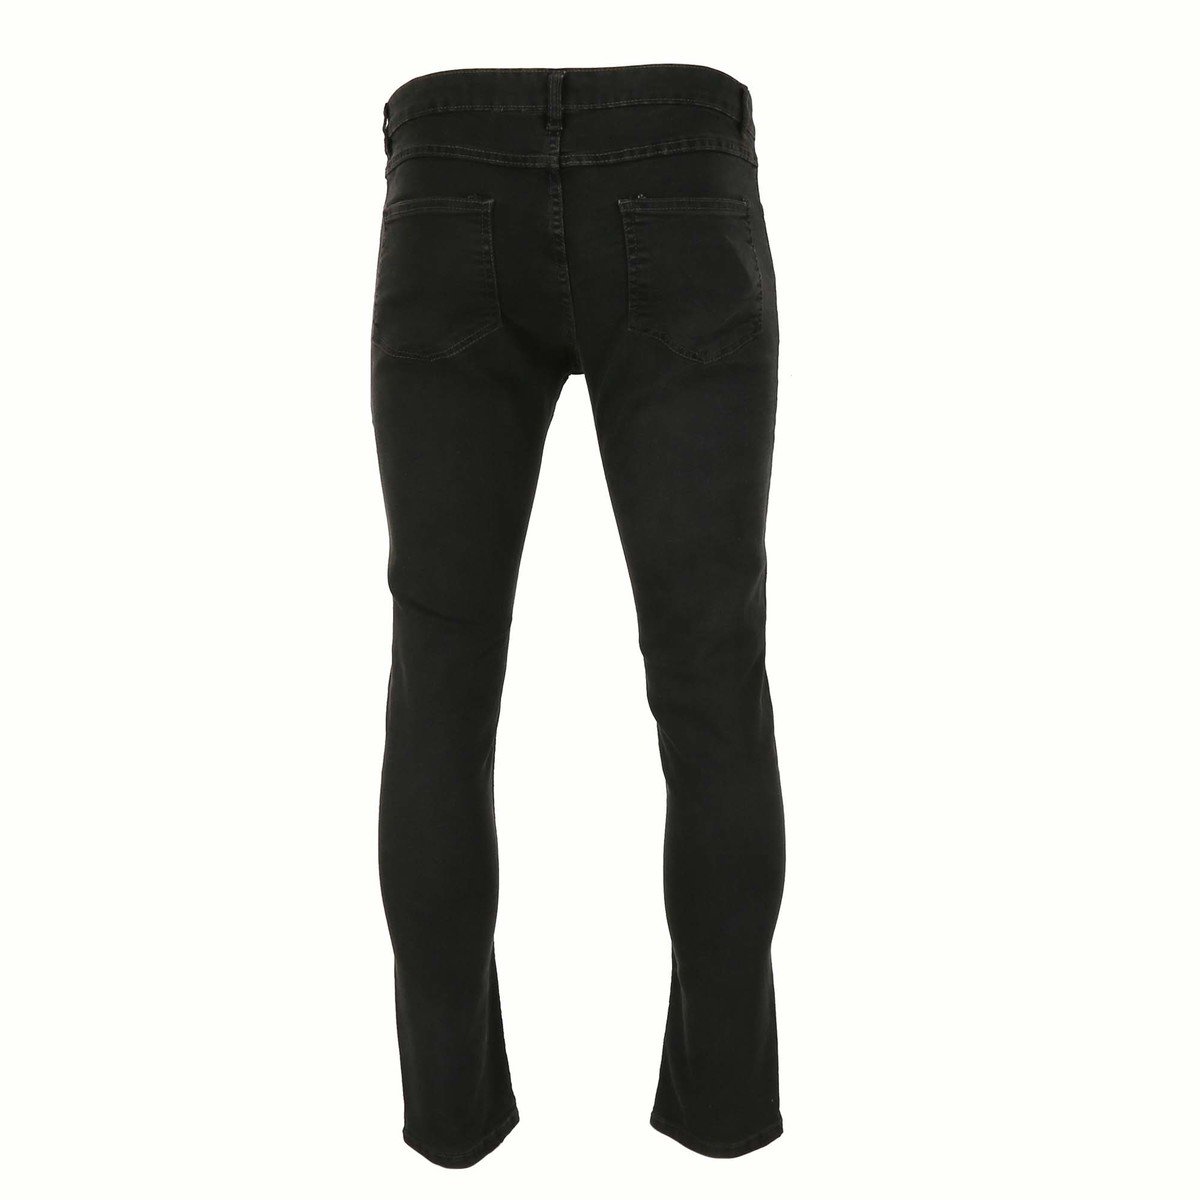 Reo Men's Denim Slim Fit Jeans BOM570C, DK.GREY 32